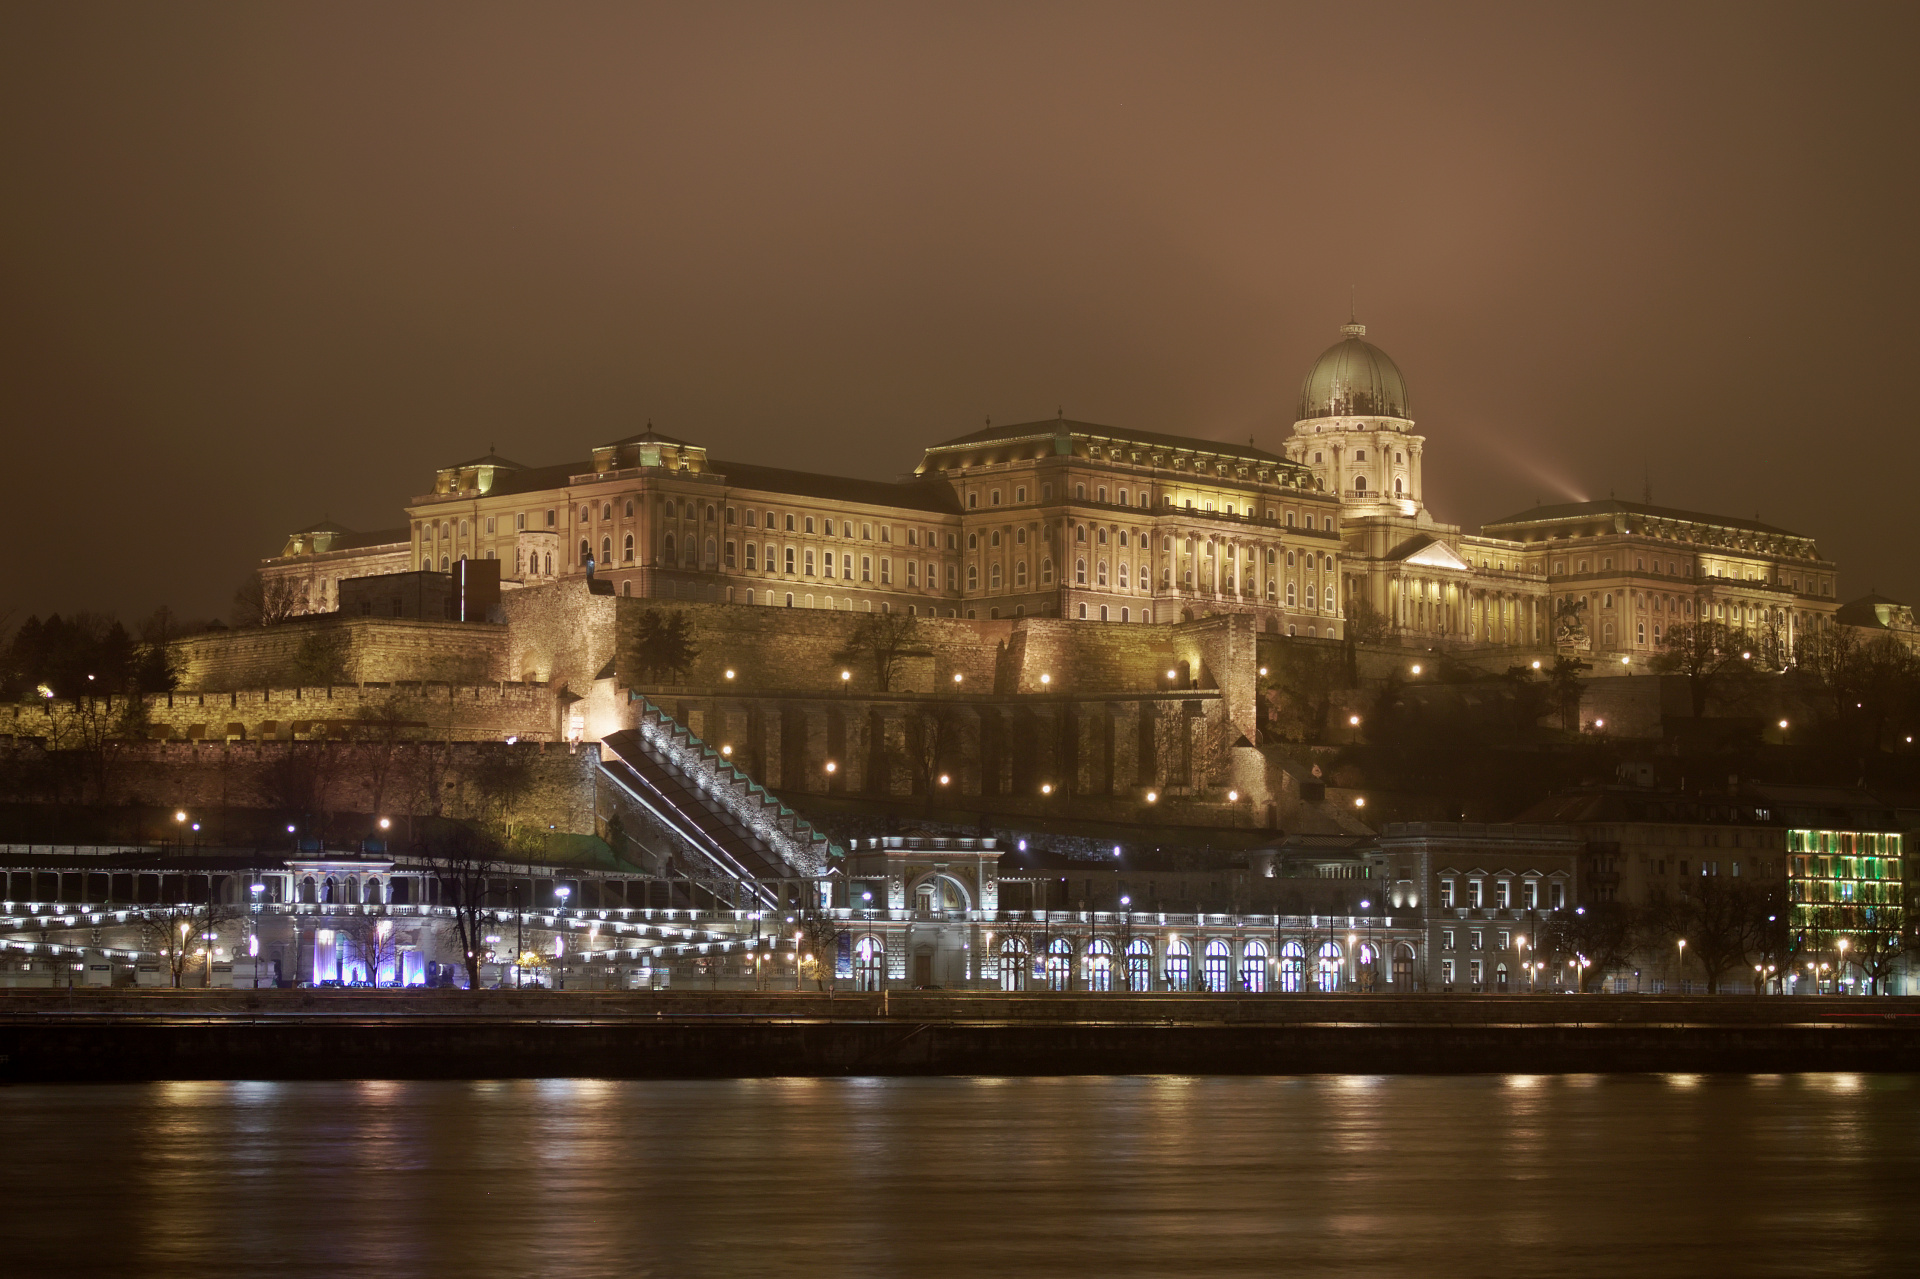 Wzgórze zamkowe i Zamek Królewski w Budzie (Podróże » Budapeszt » Budapeszt w nocy)